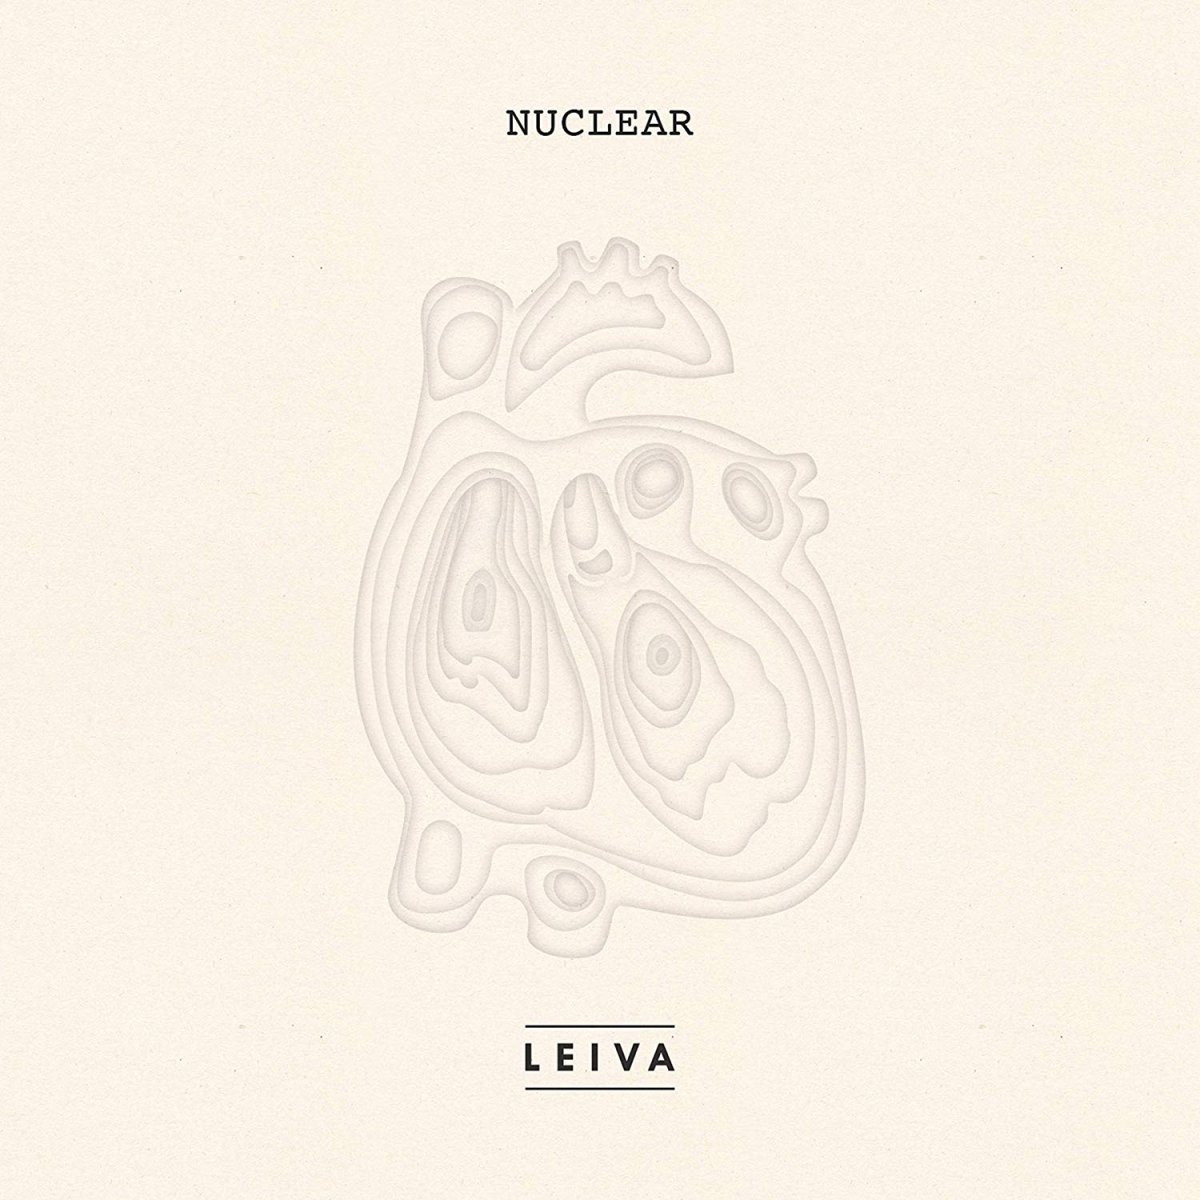 'Nuclear' - Leiva